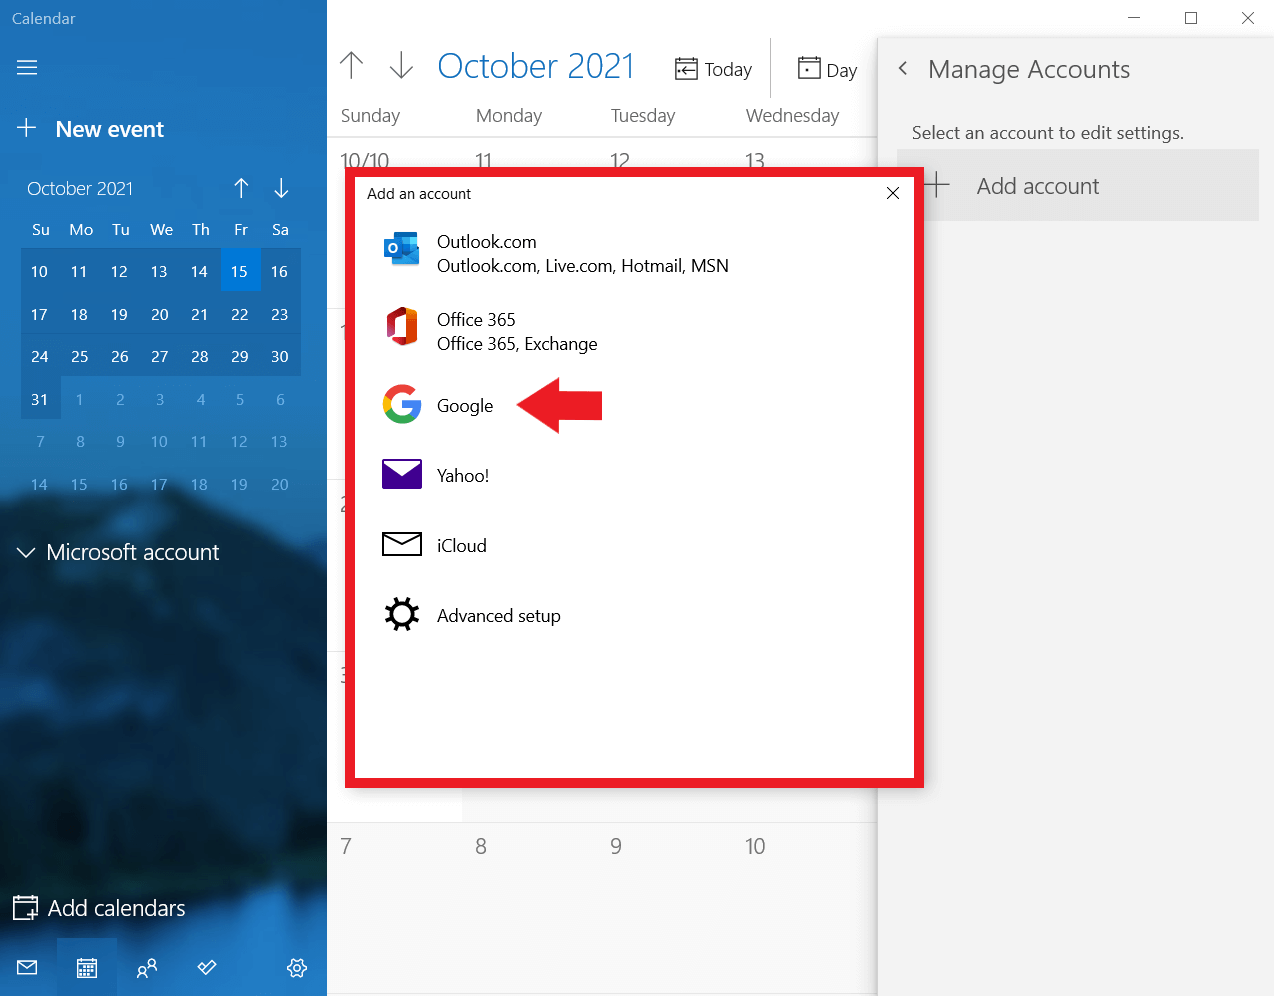 Windows Calendar: Add Google as an account